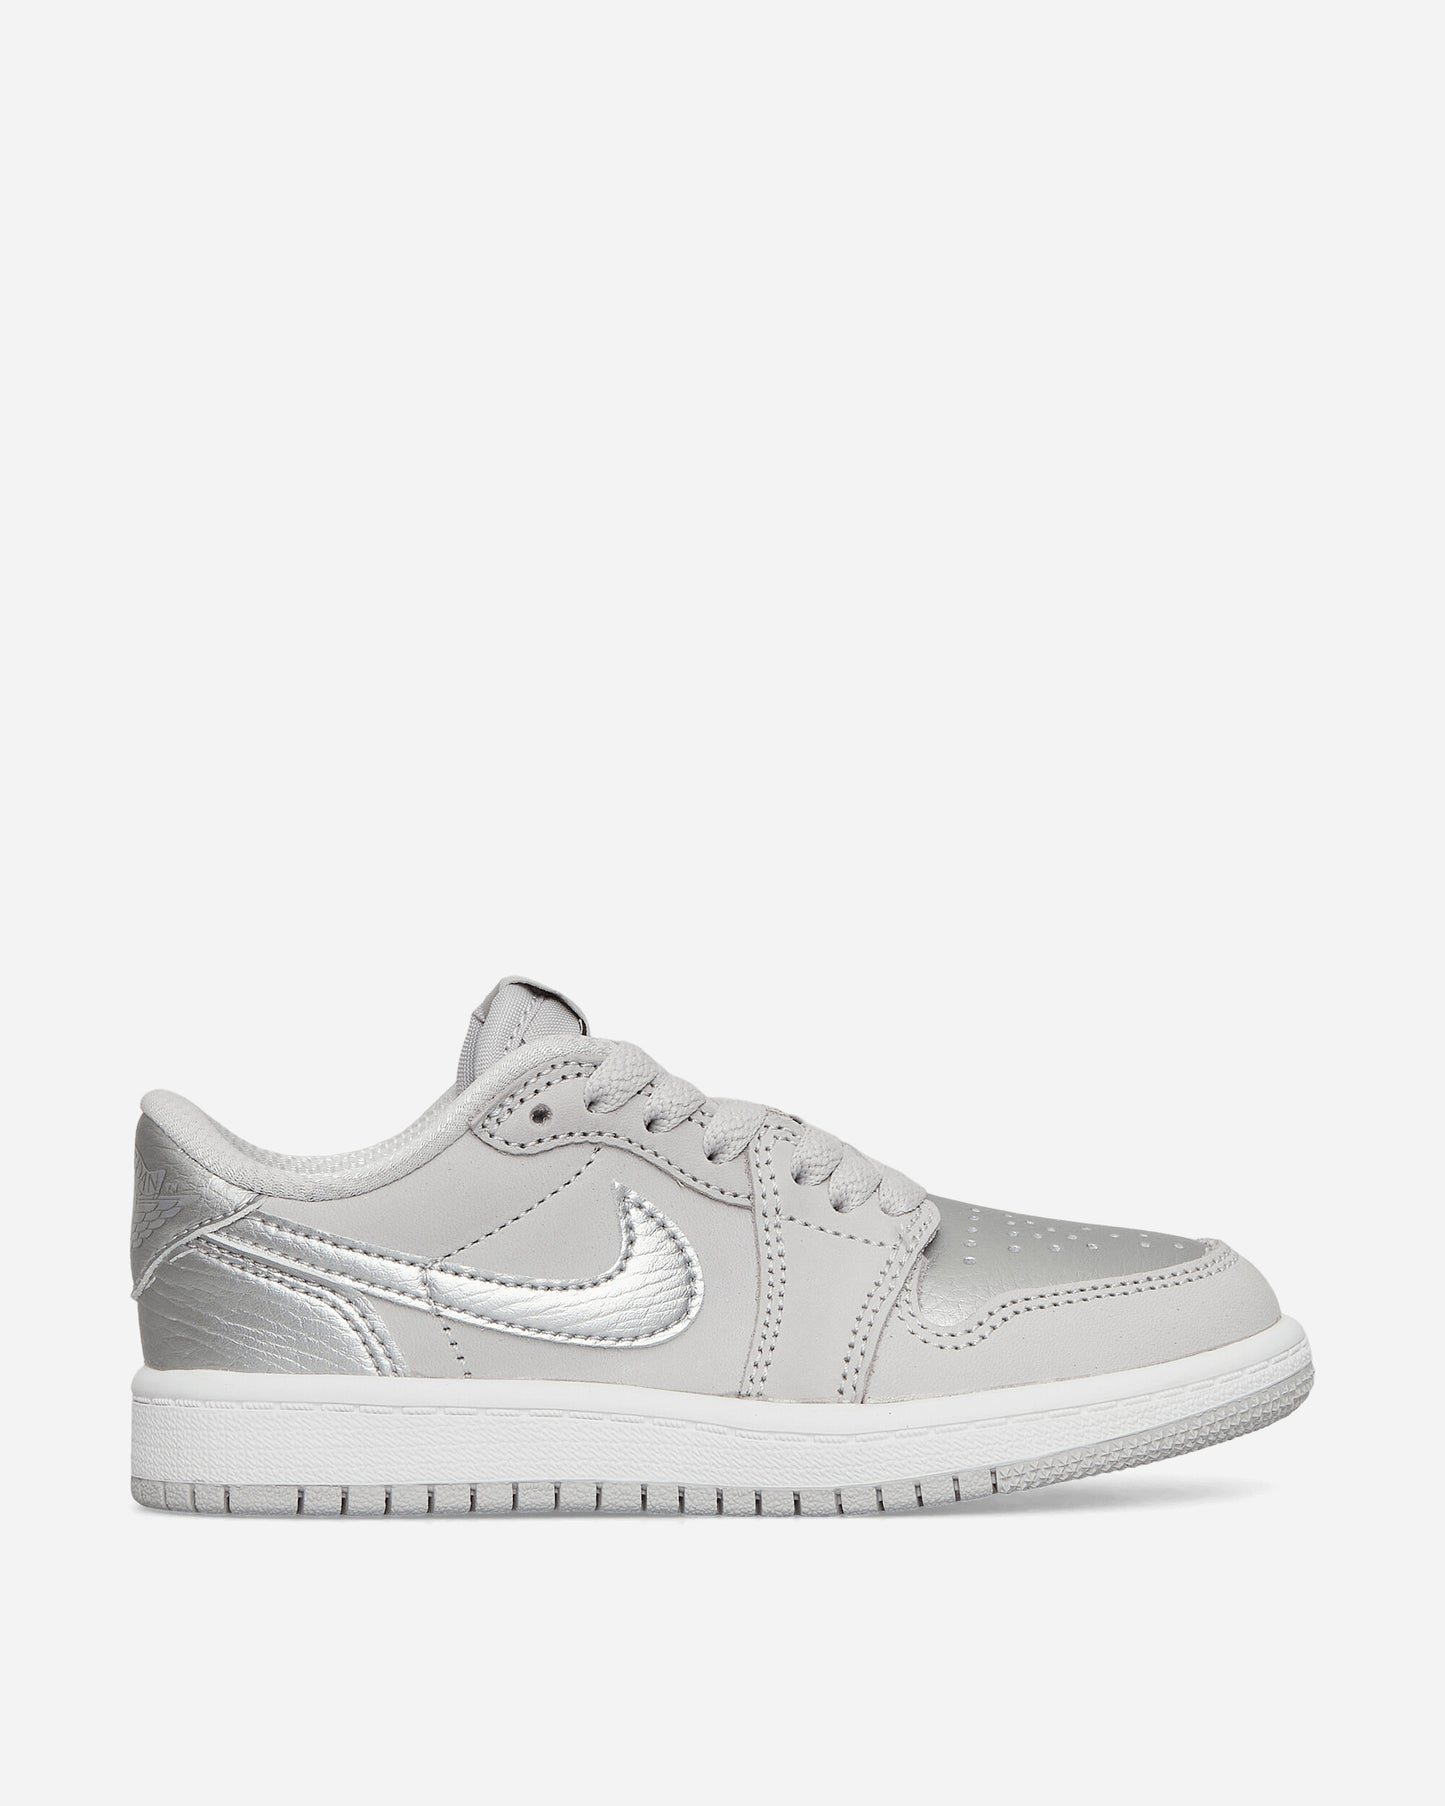 Nike Jordan Jordan 1 Retro Low Og (Ps) Neutral Grey/Metallic Silver Sneakers Low FQ5436-002